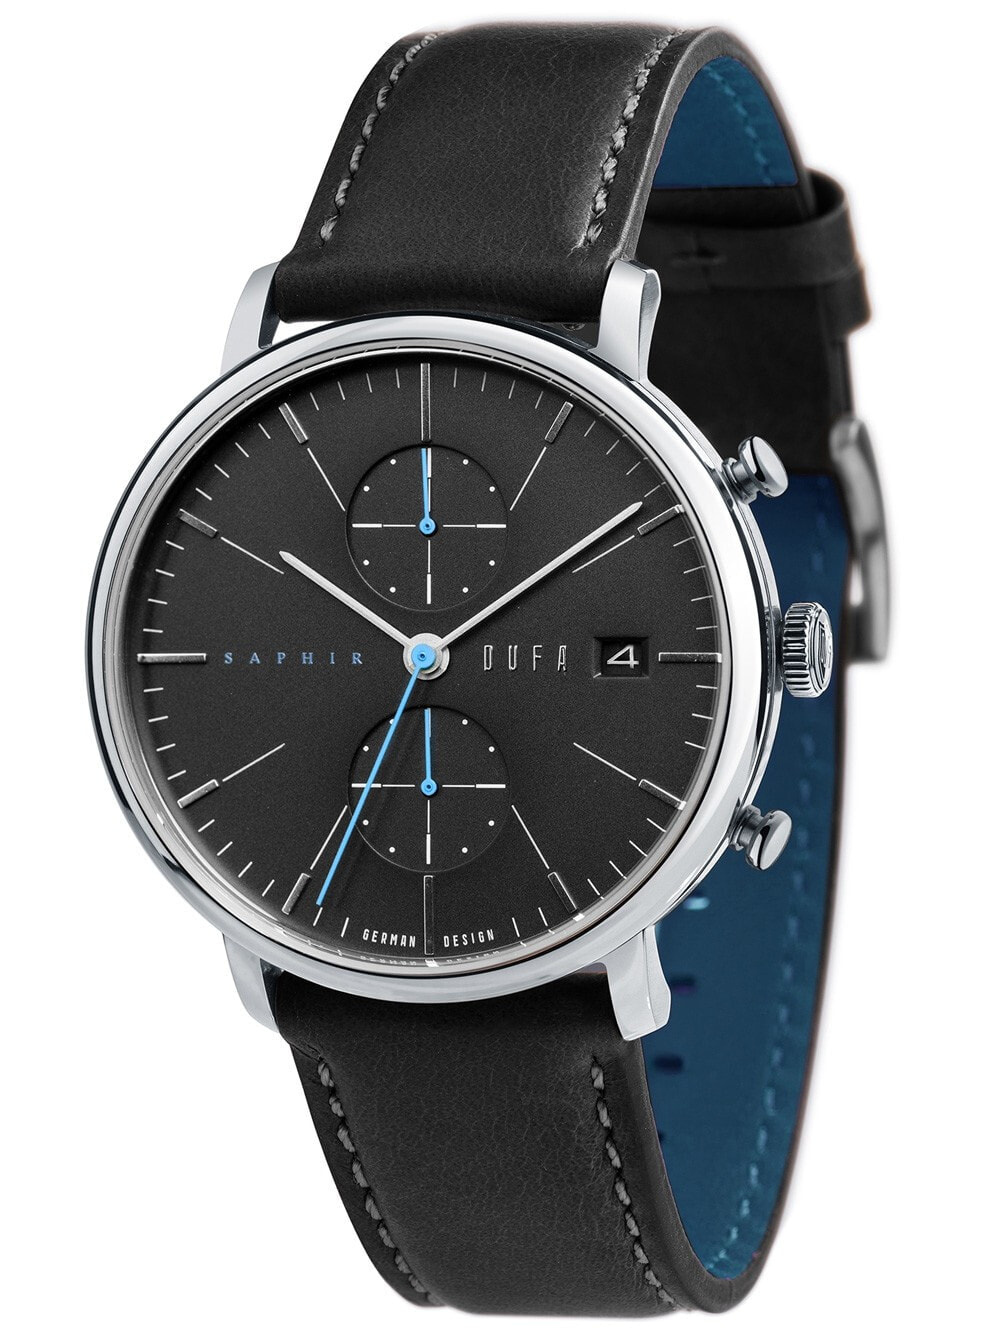 Мужские наручные часы с черным кожаным ремешком  DuFa DF-9027-04 Sapphire Chronograph 40mm 3ATM